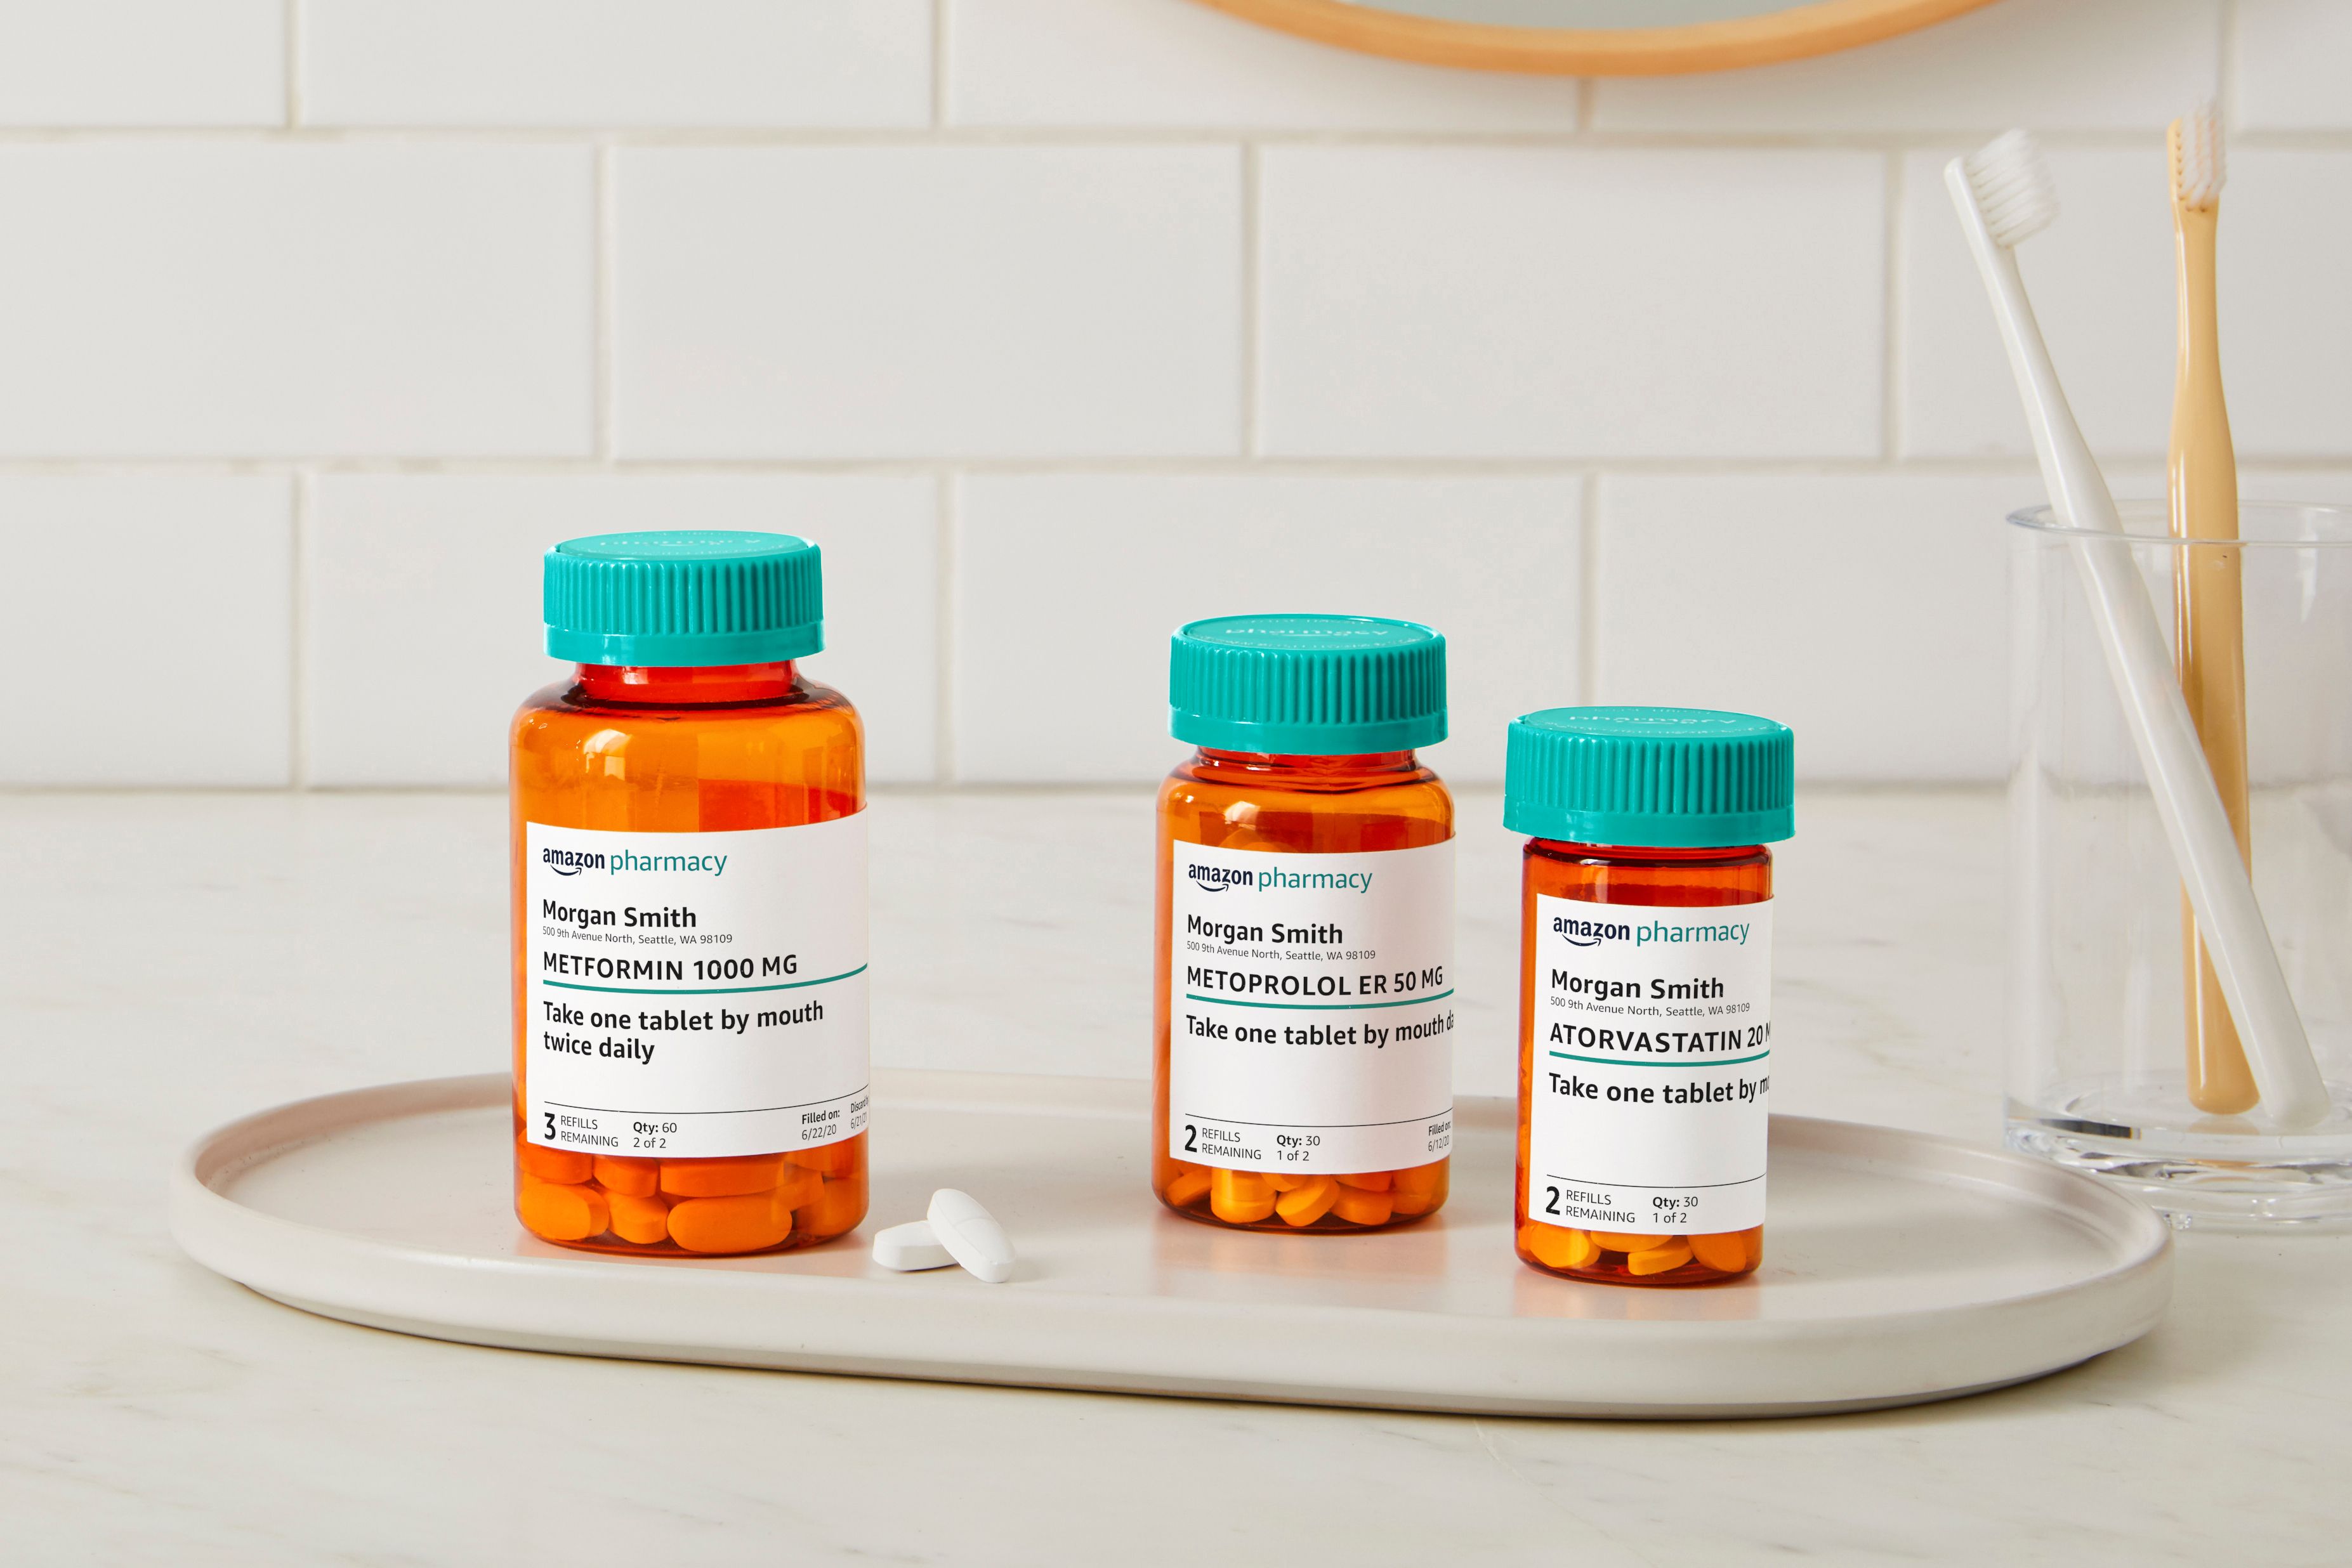 Três frascos de remédios em uma bandeja com rótulos da Amazon Pharmacy em cada frasco.